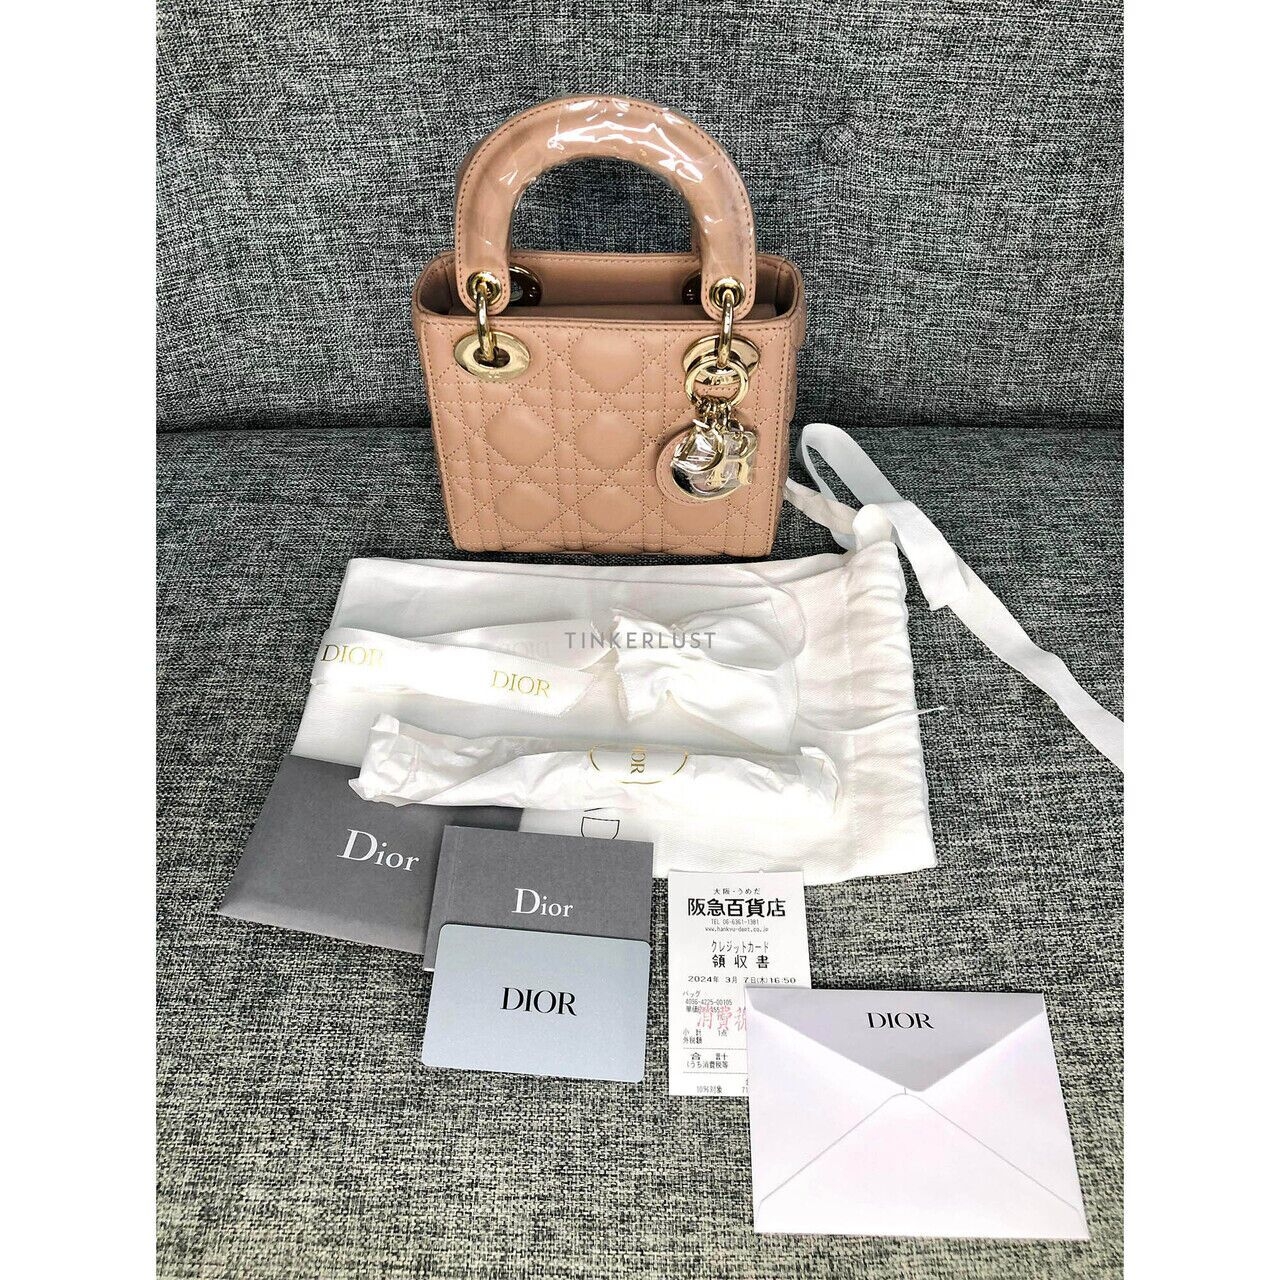 Christian Dior Lady Dior Mini Fard GHW Handbag